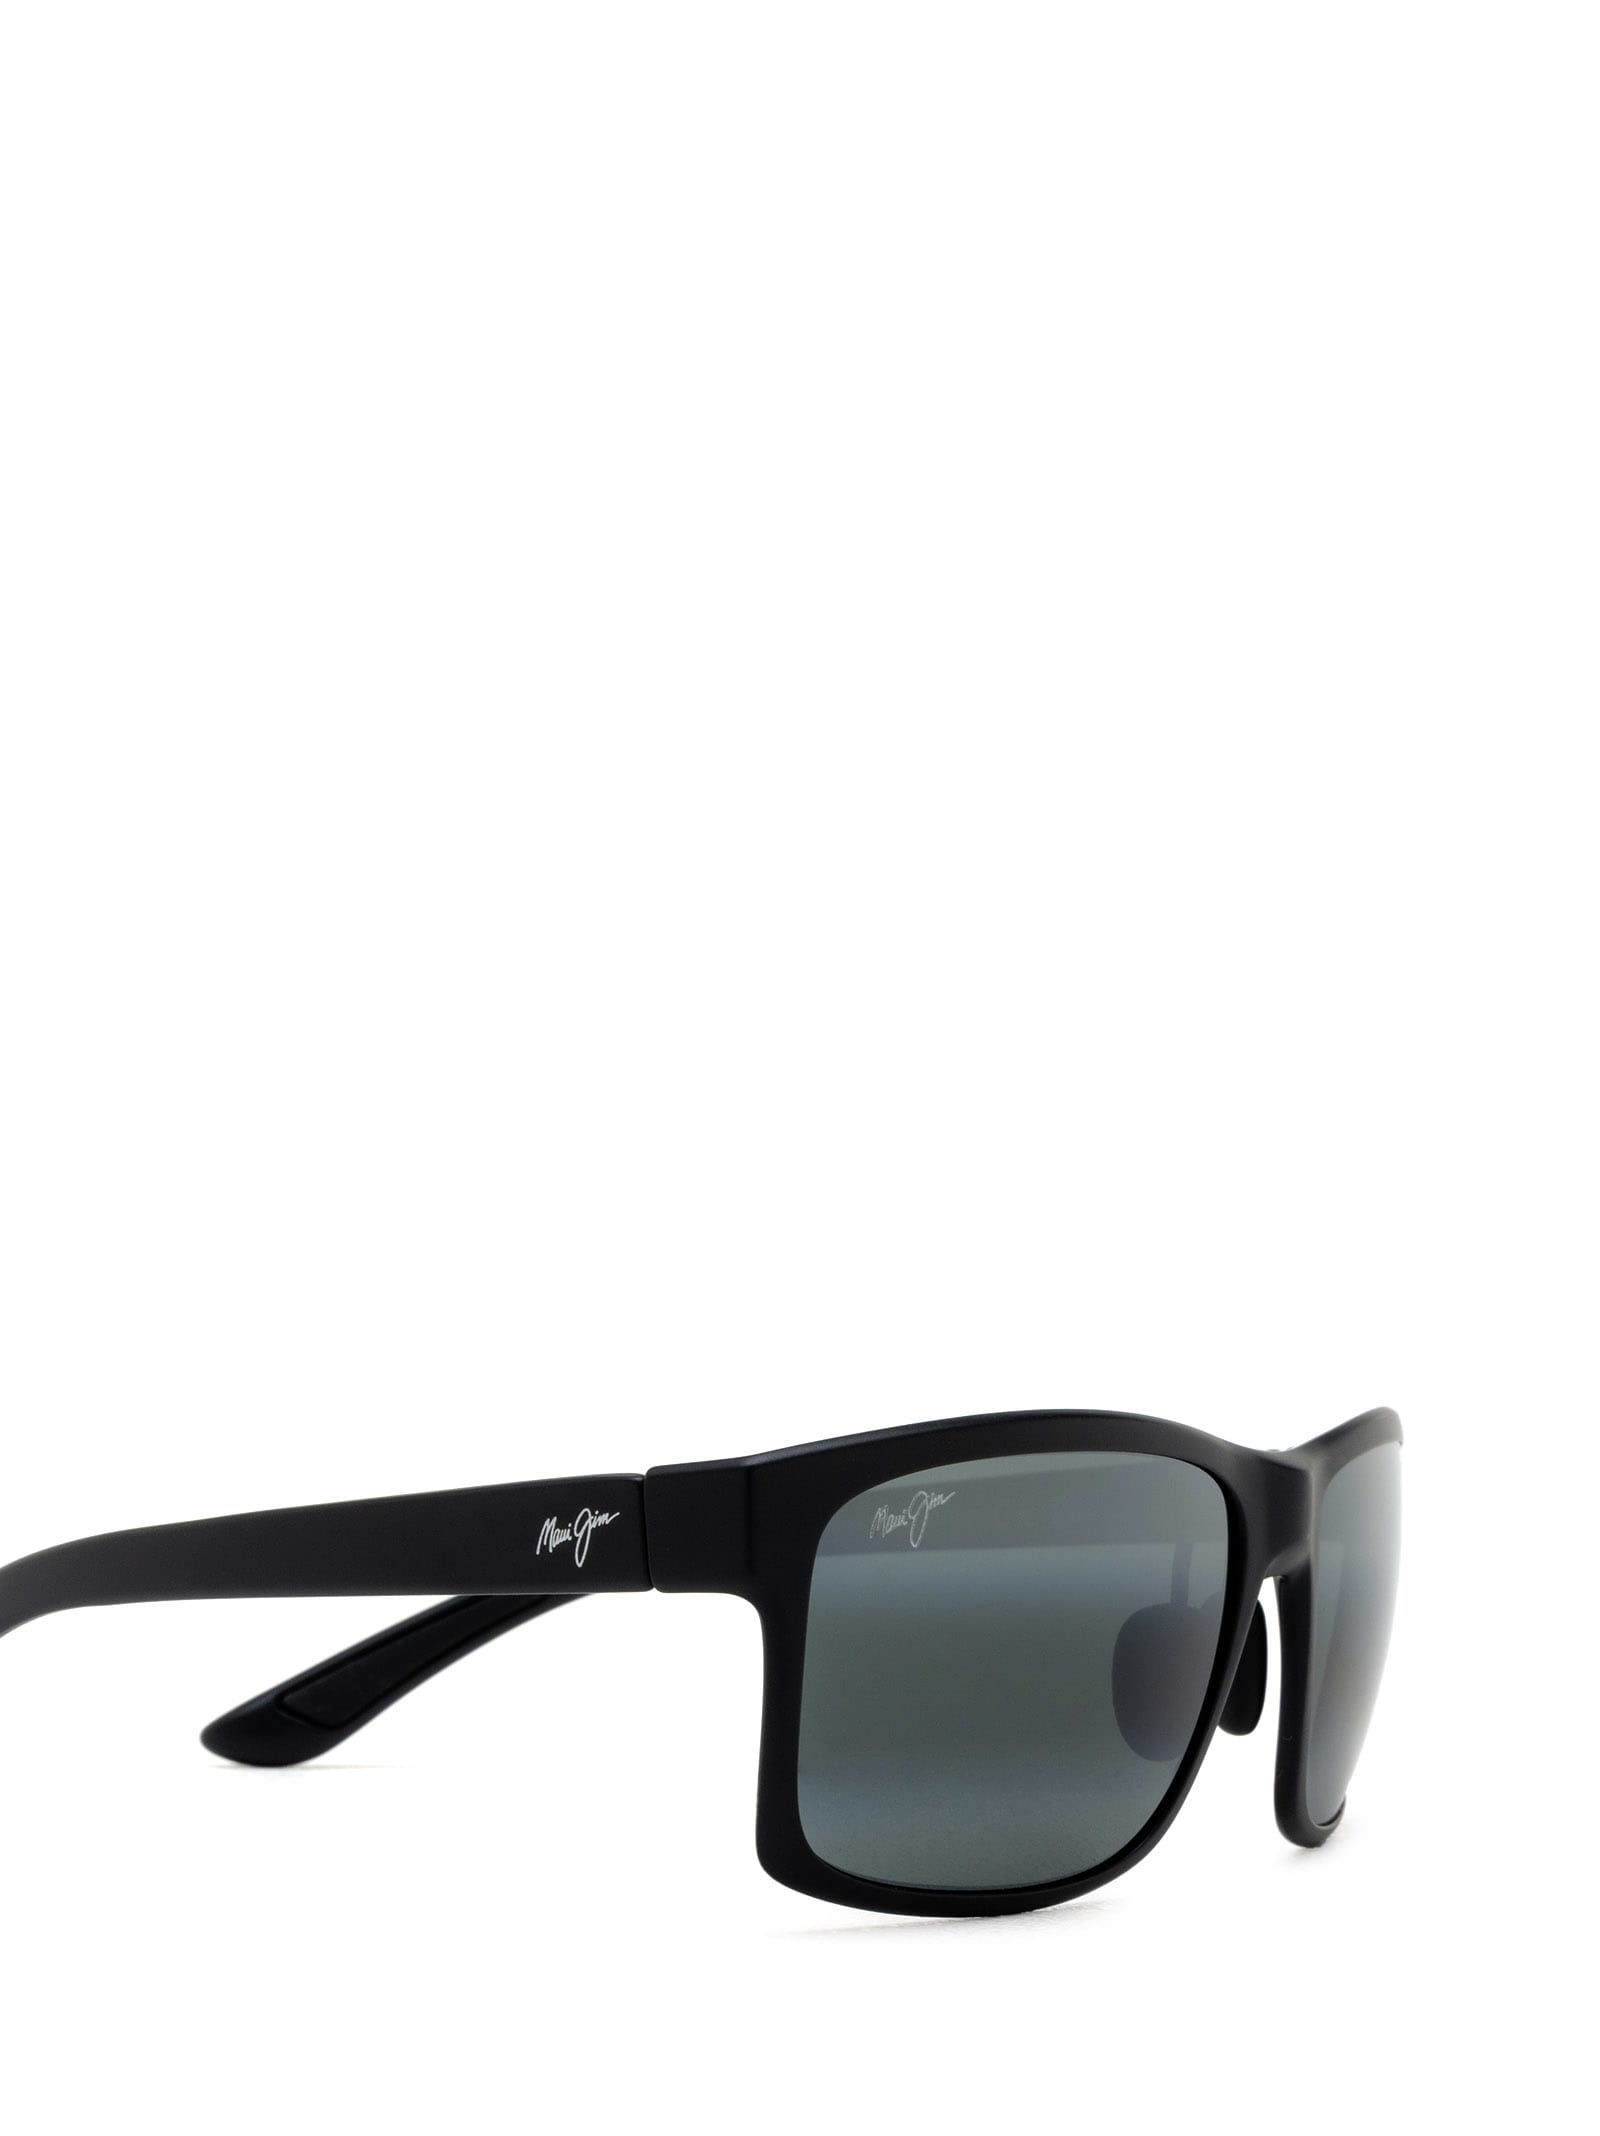 Shop Maui Jim Mj439 Black Matte Sunglasses